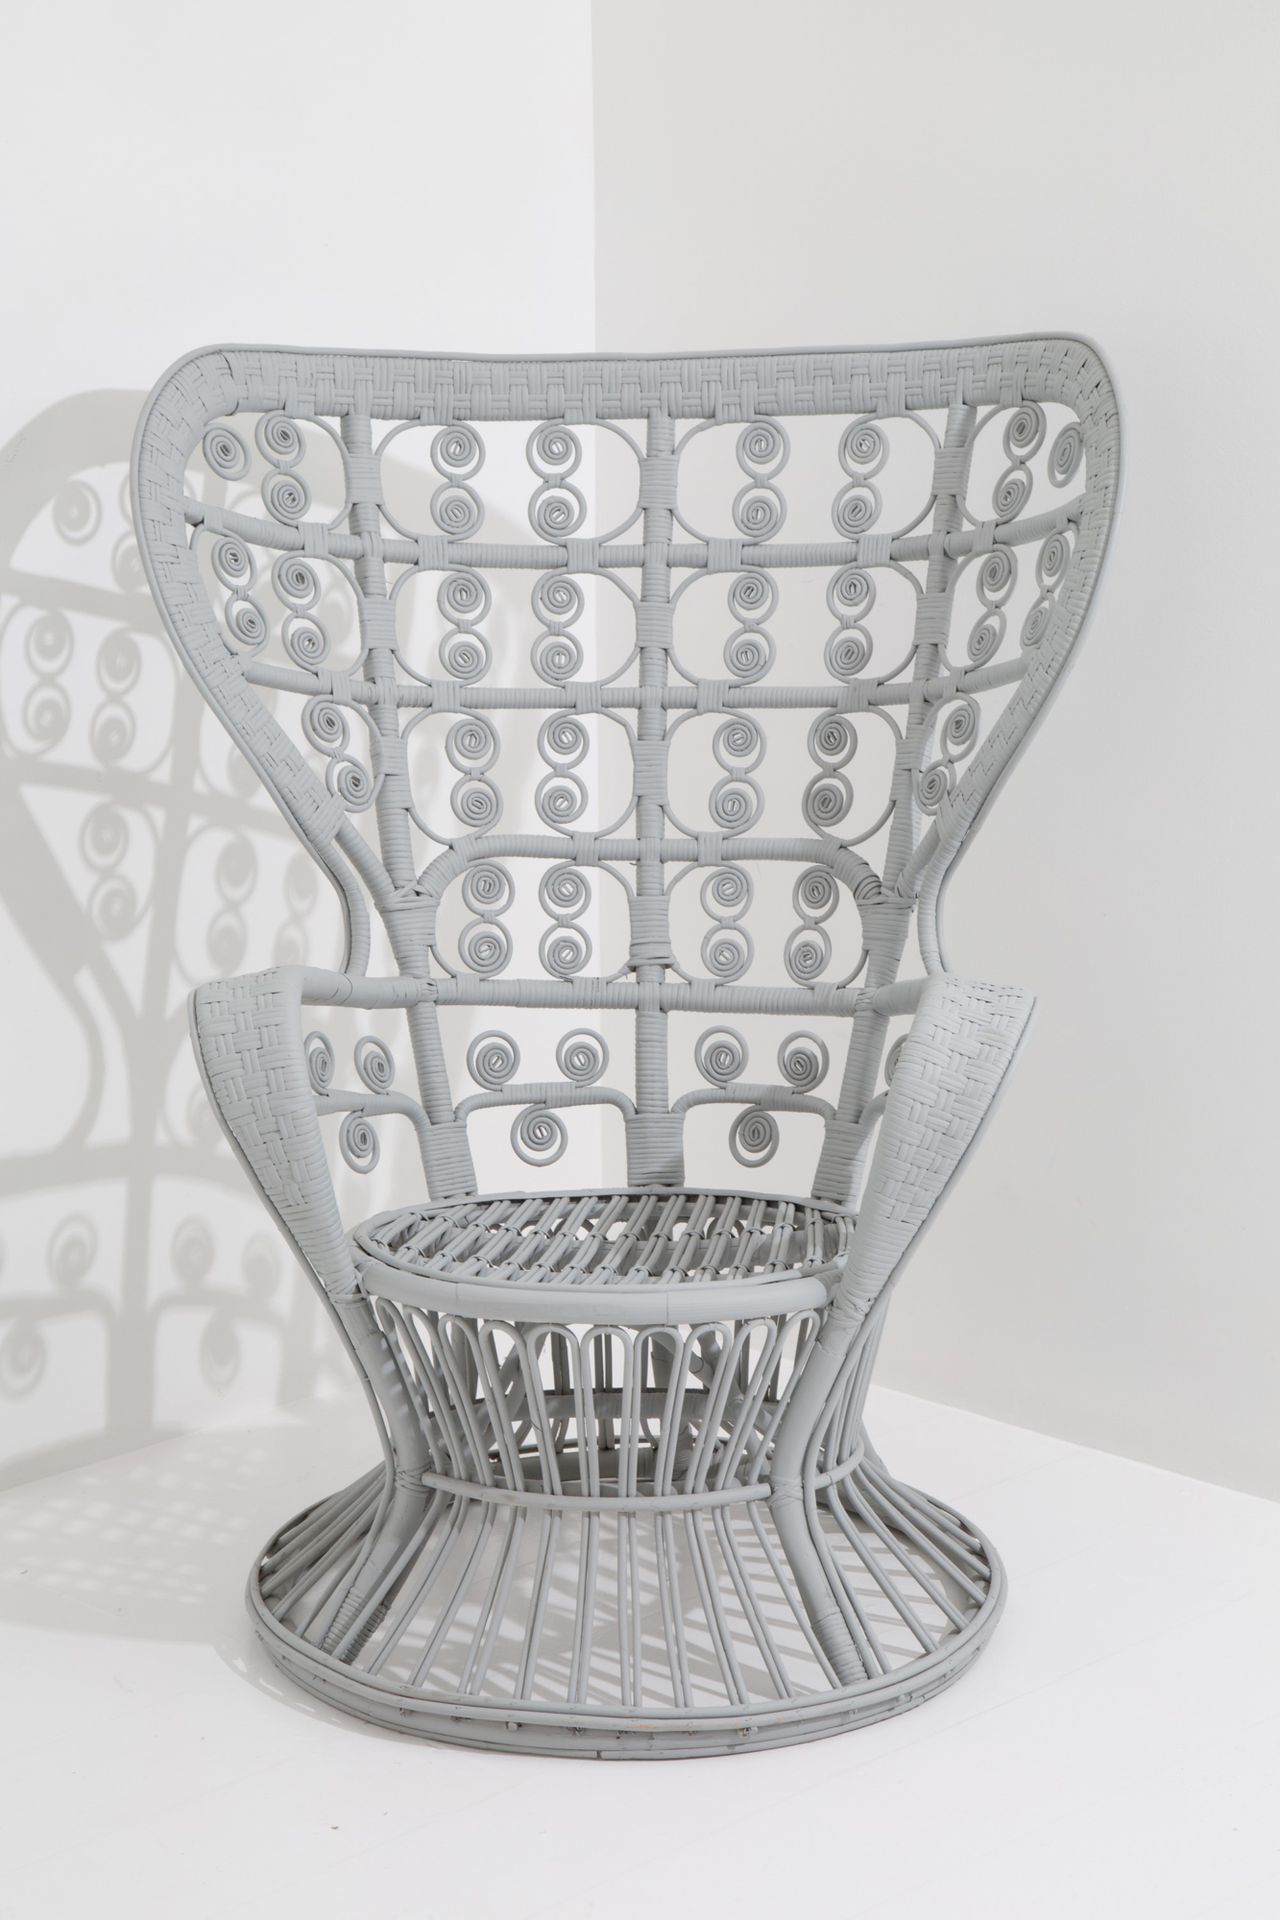 Large armchair 
Grand fauteuil en osier gris. 1950s-60s 125x70x100 cm ca.